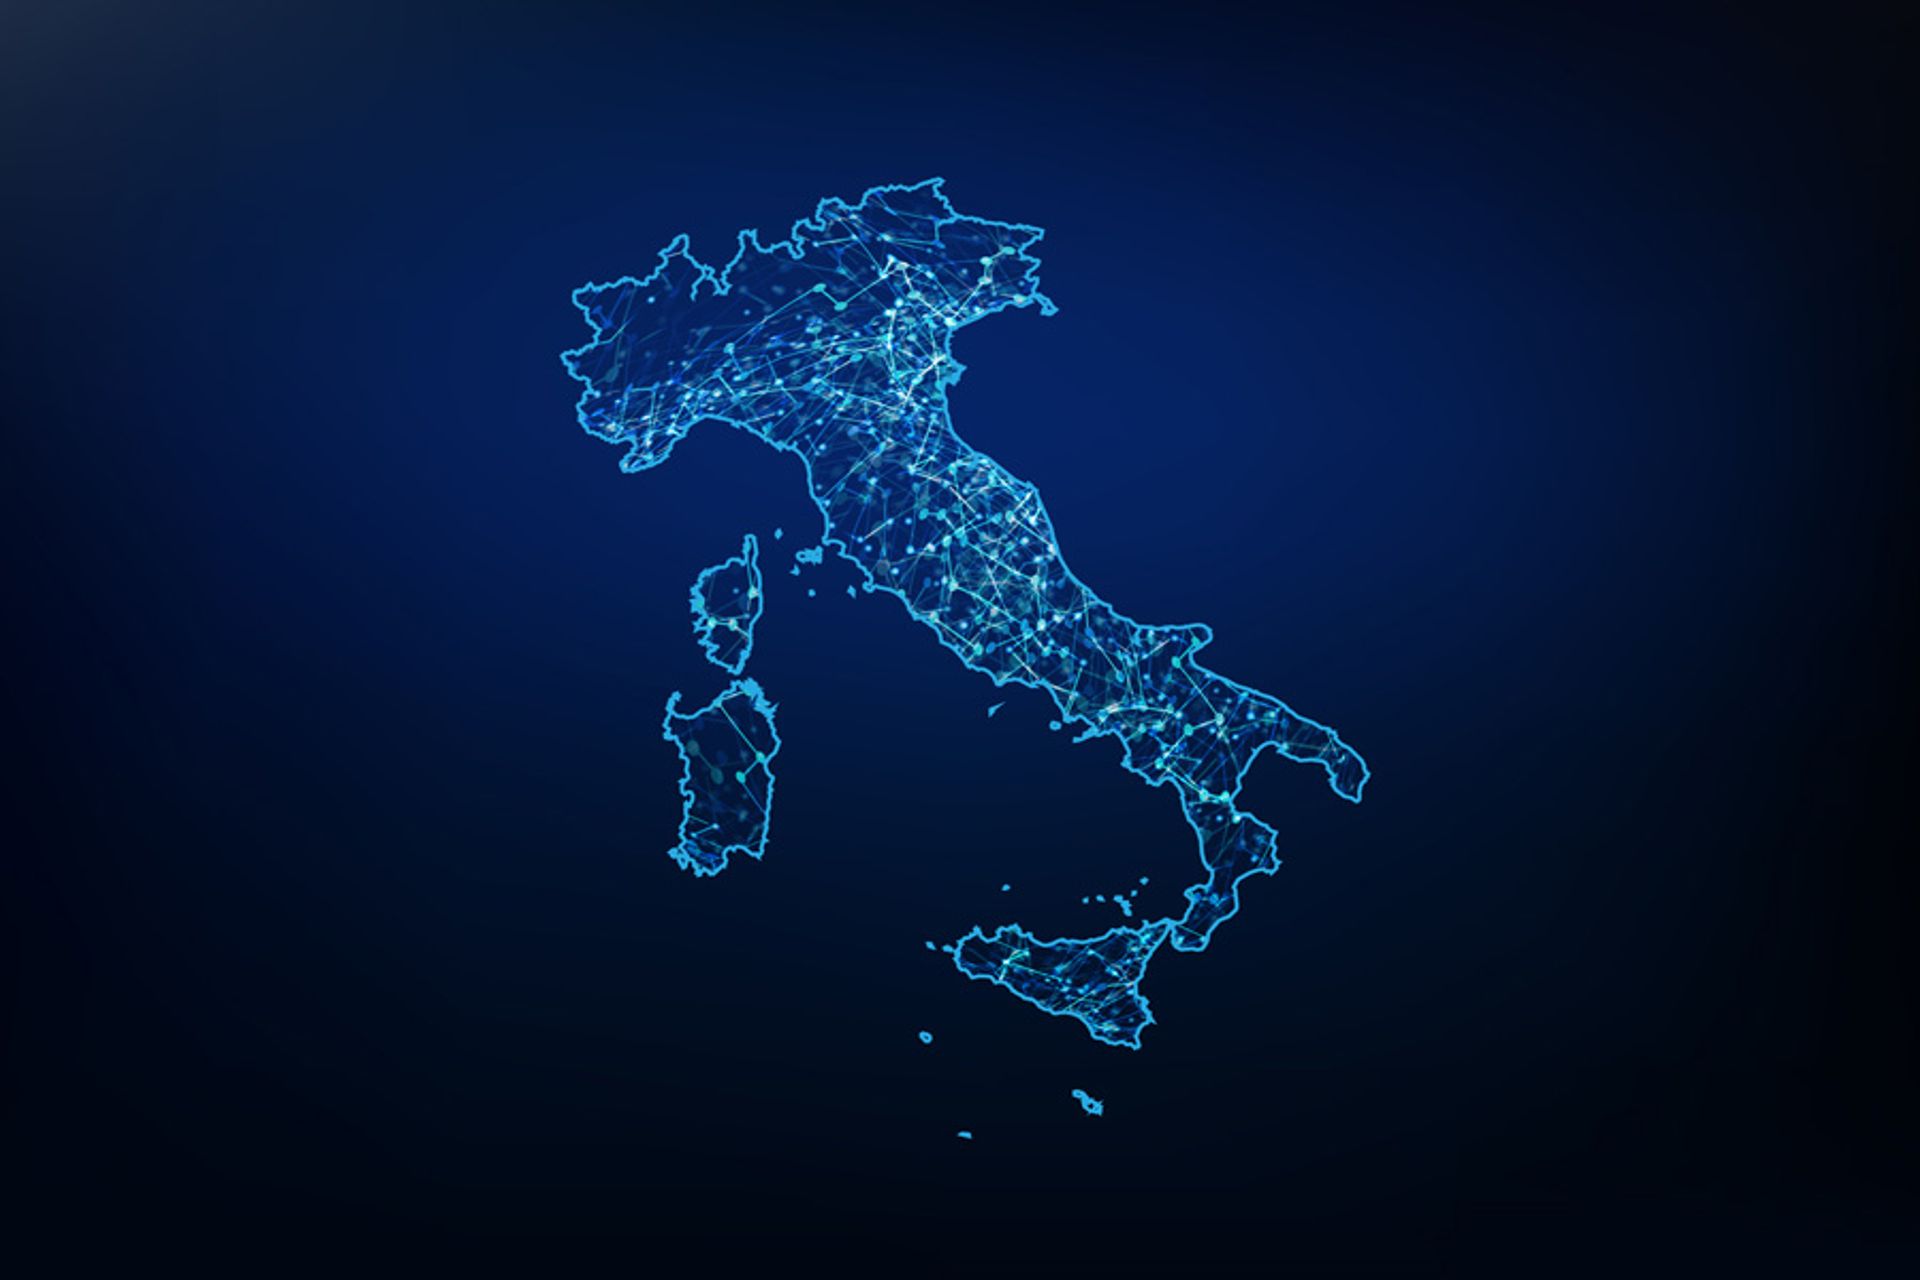 Skaitmeninė transformacija yra didelis iššūkis Italijos Respublikai